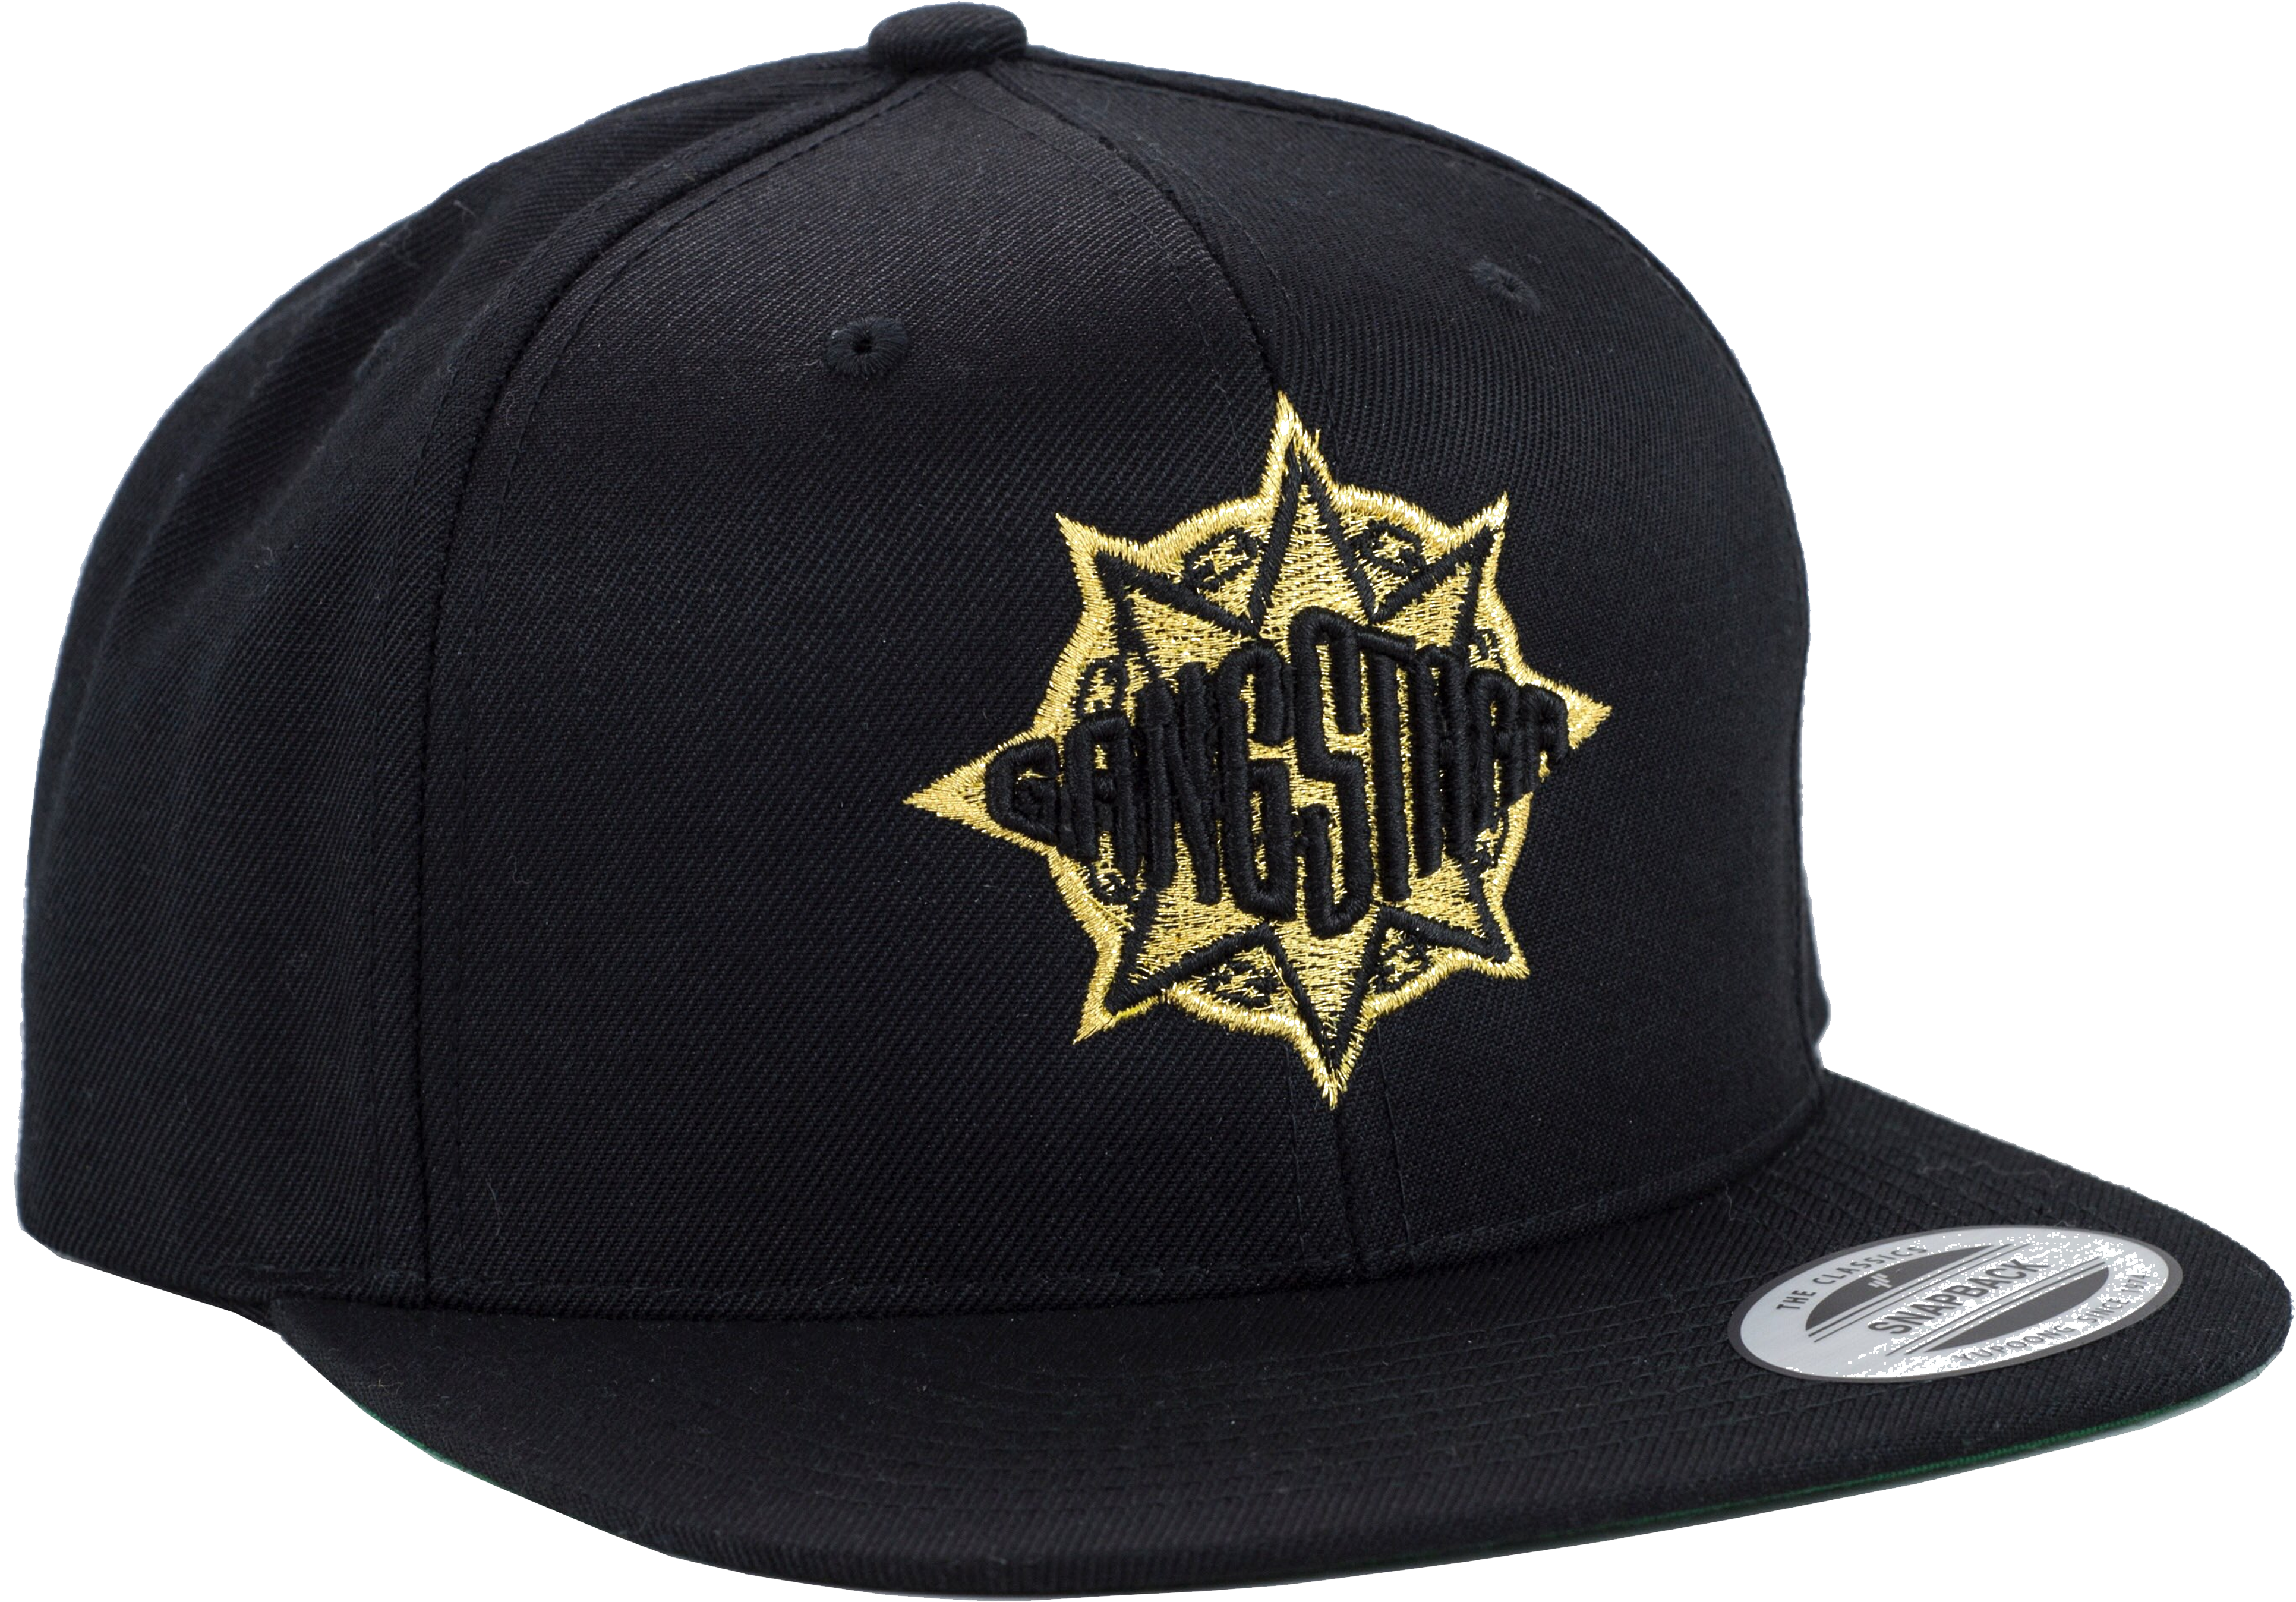 Yankees Hat Png 3864 X 2696